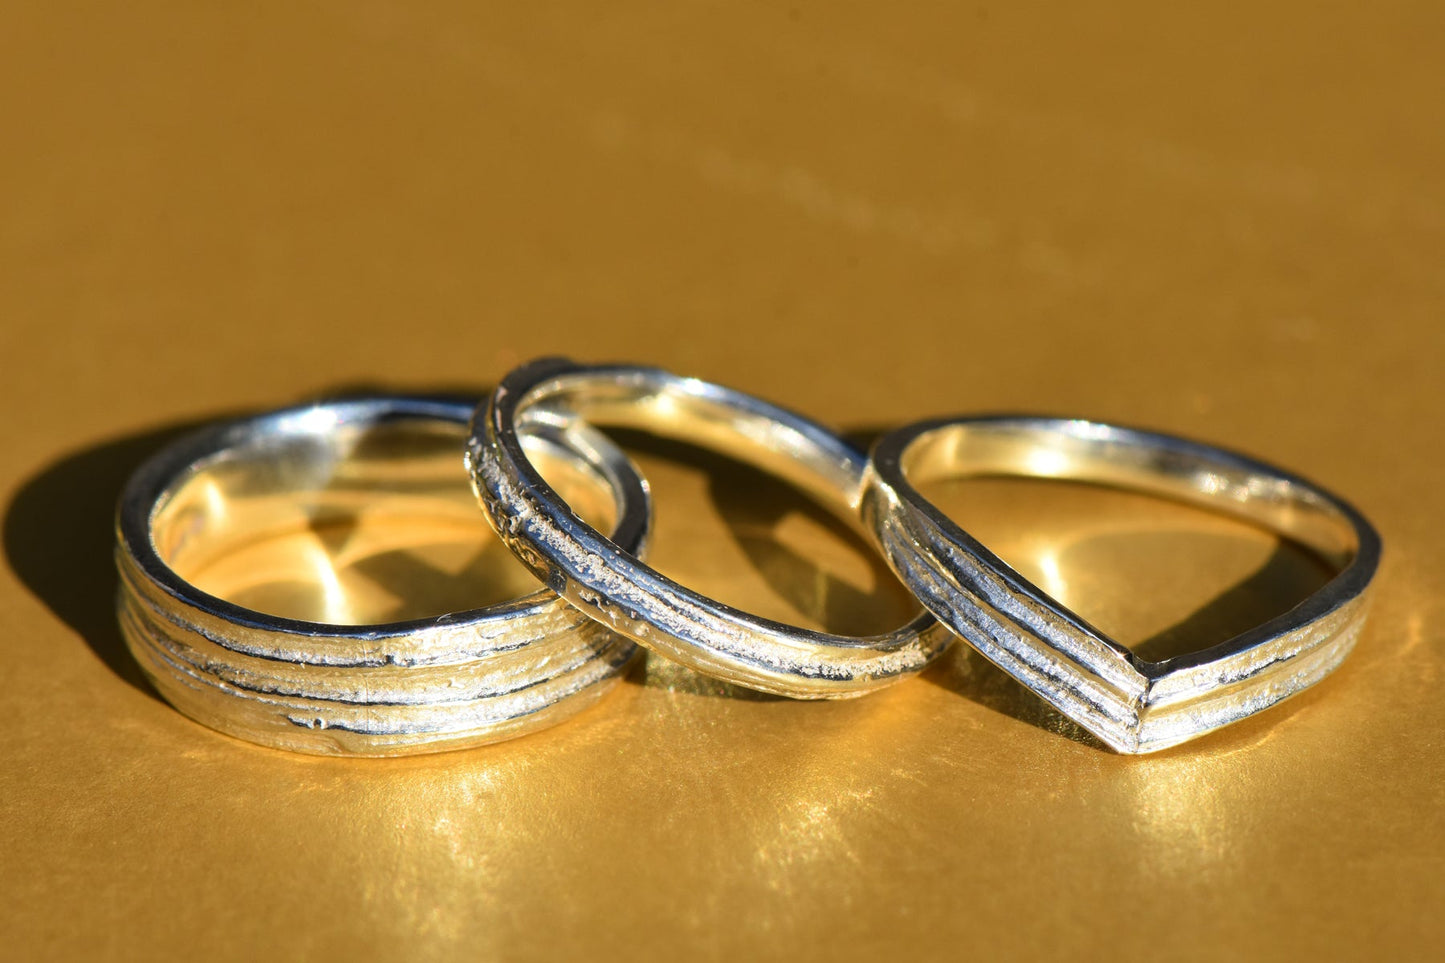 Skinny Lined Oak Ring in Silver